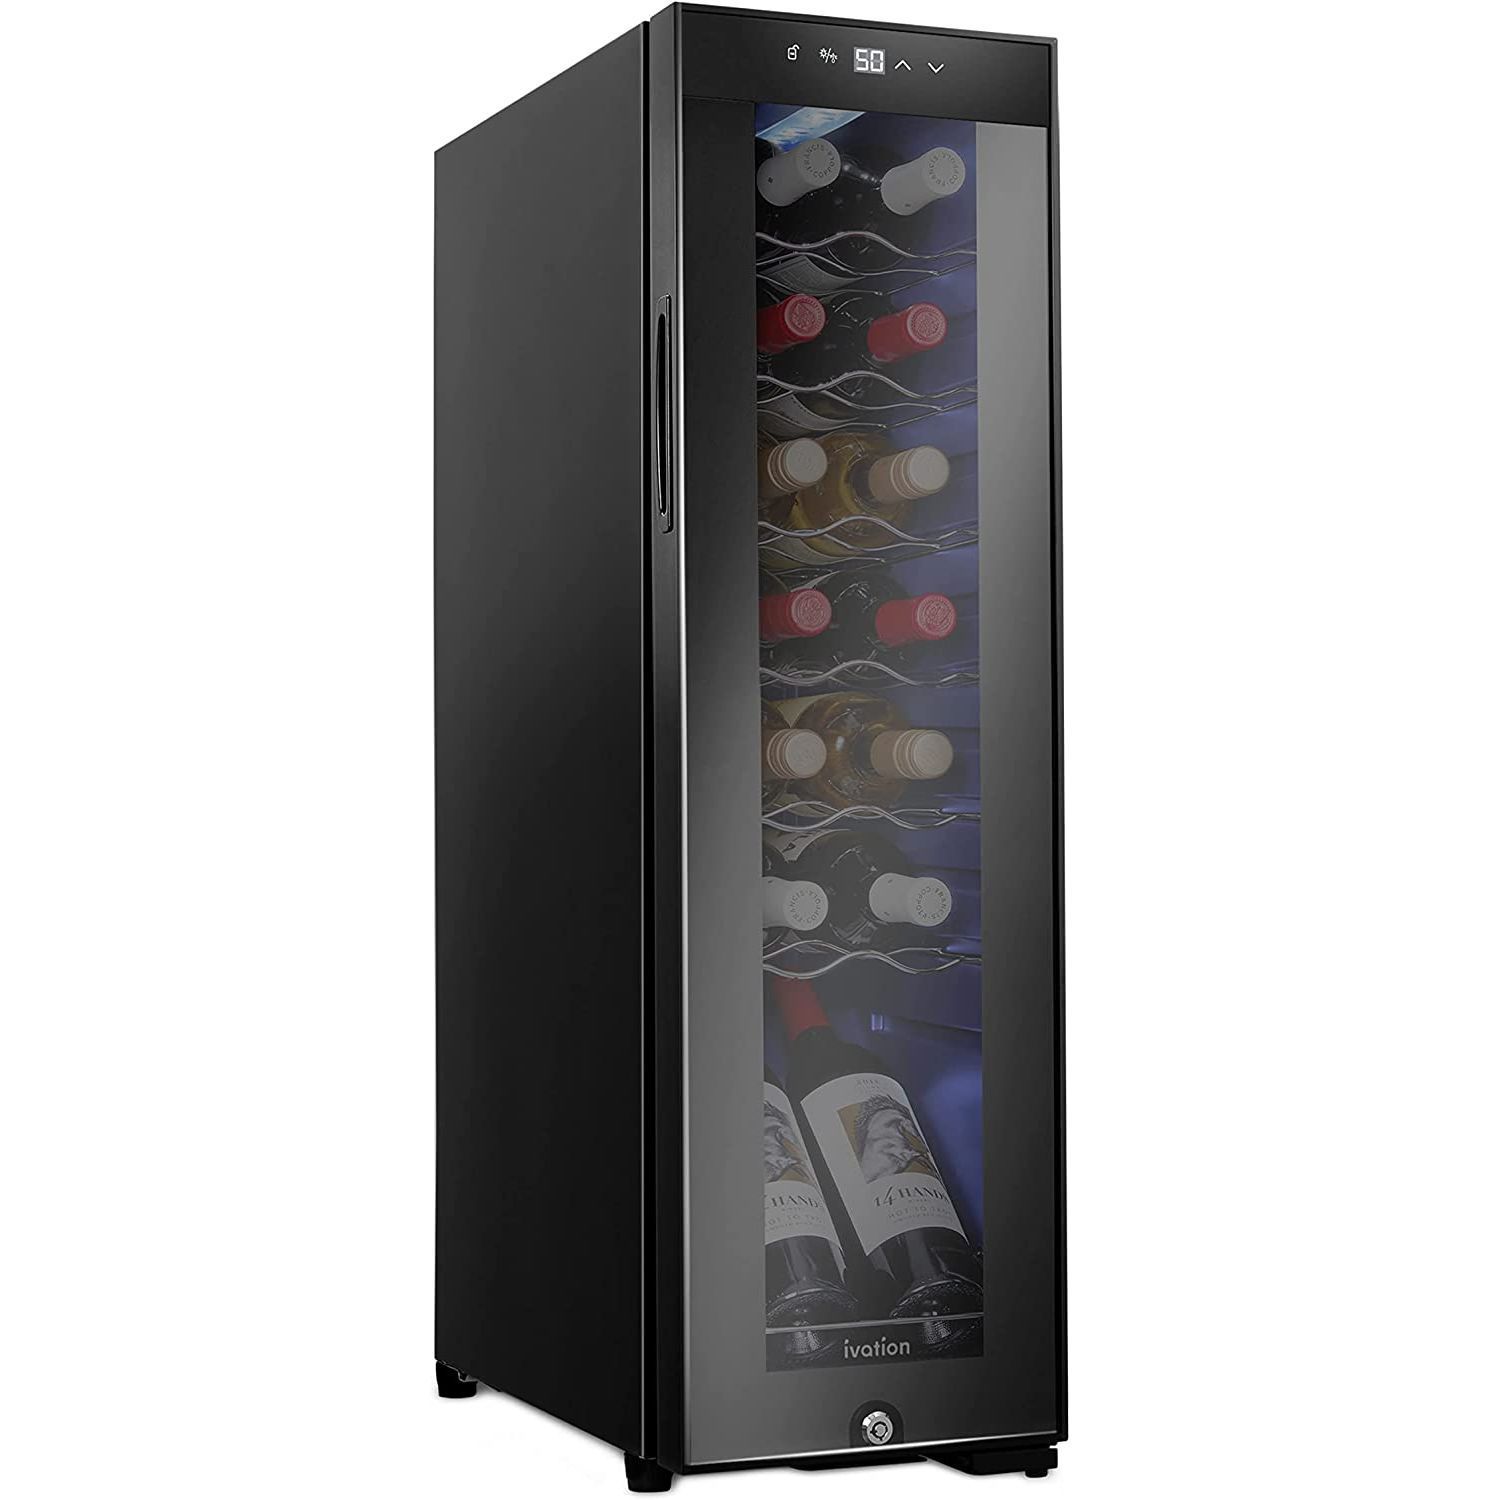 Costway 12 Bottle Compressor Wine Cooler Refrigerator Large - See Details - Black